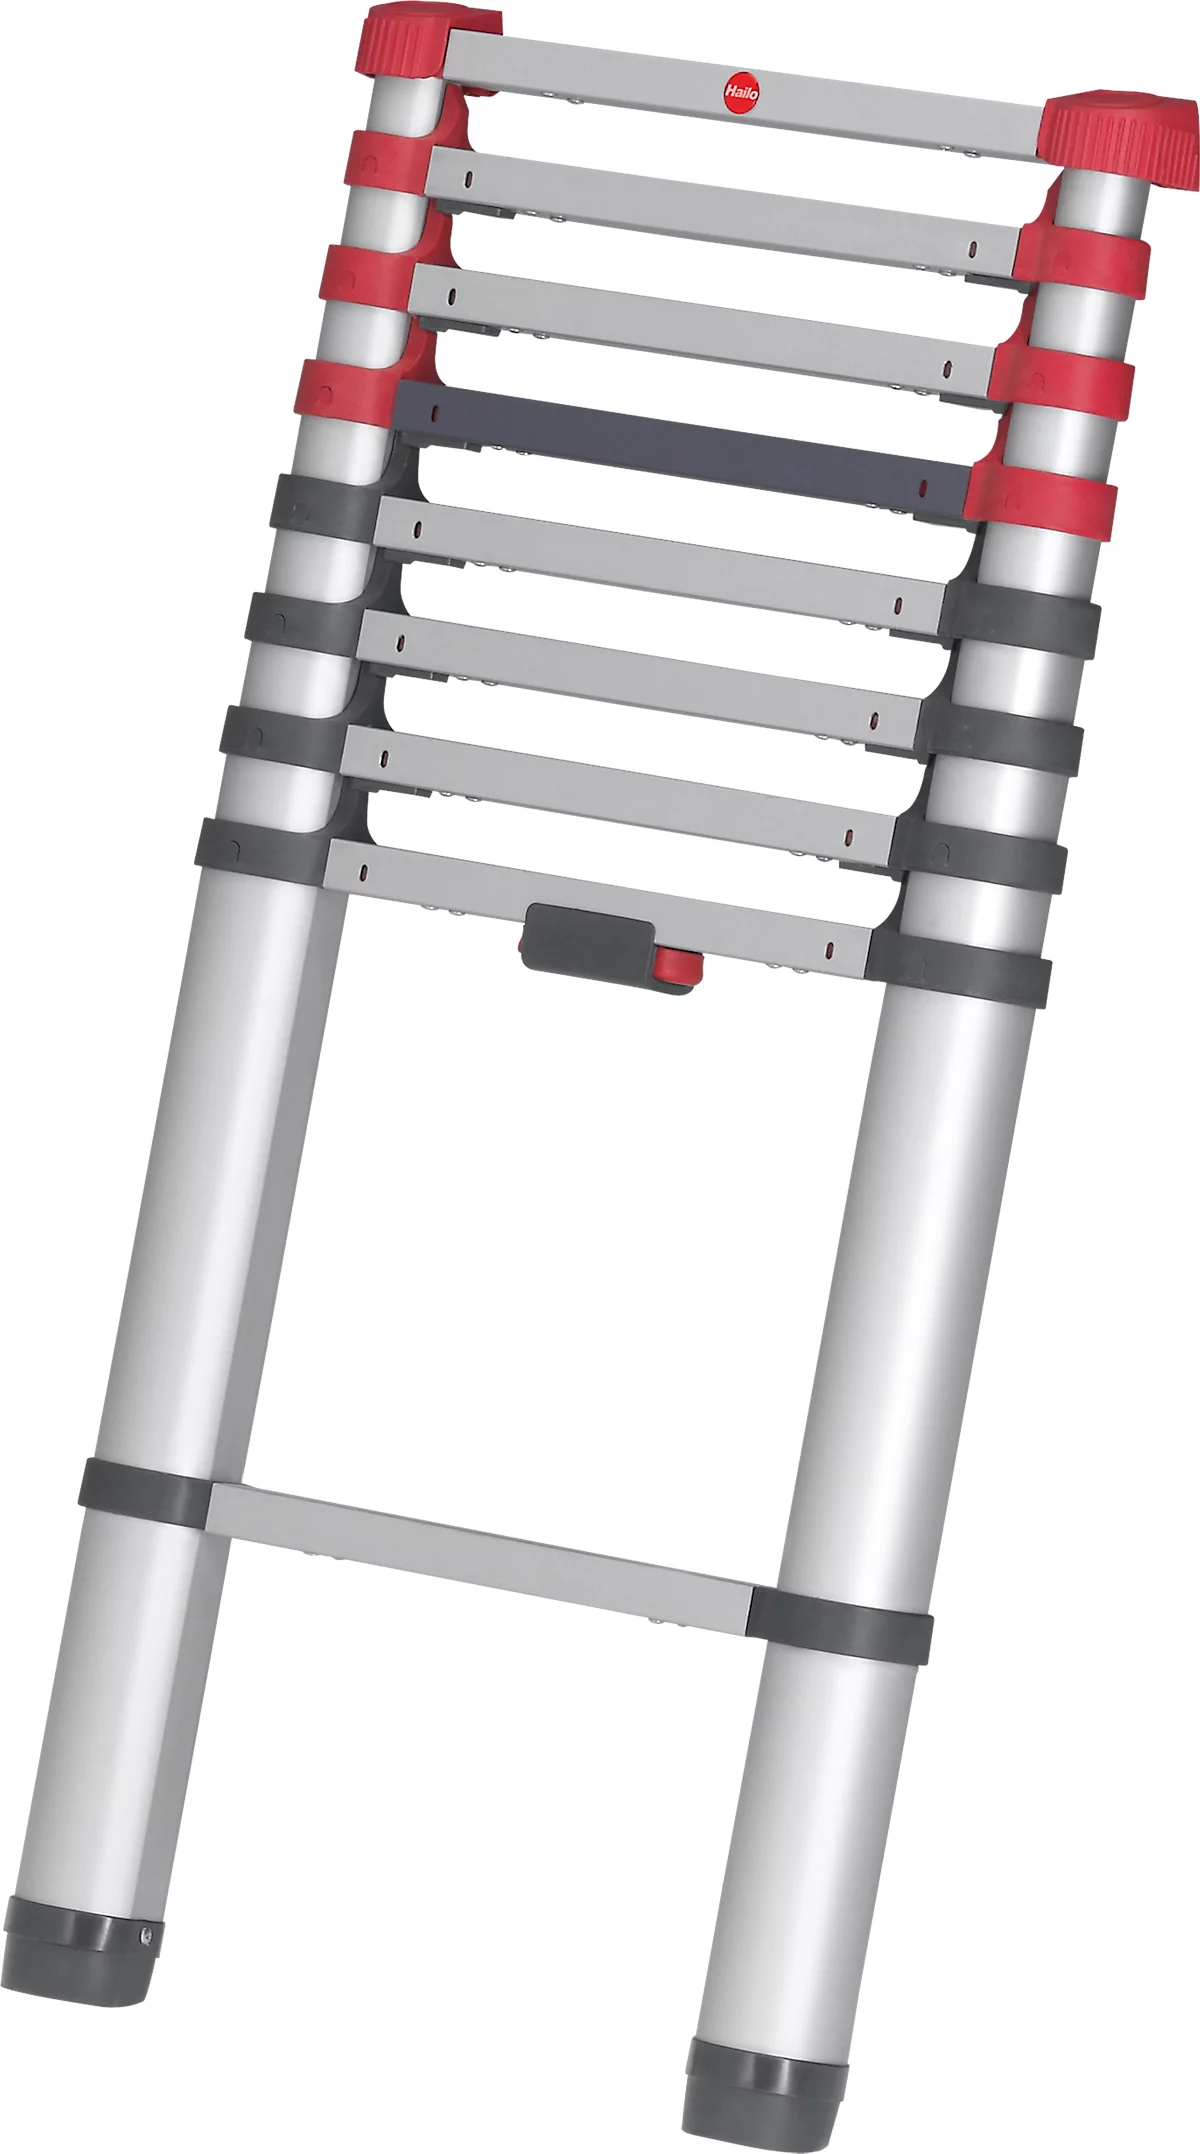 Teleskopleiter Hailo T80 FlexLine, EN 131-6, höhenverstellbar, Einhand-Entriegelung, bis 150 kg, 9 Sprossen